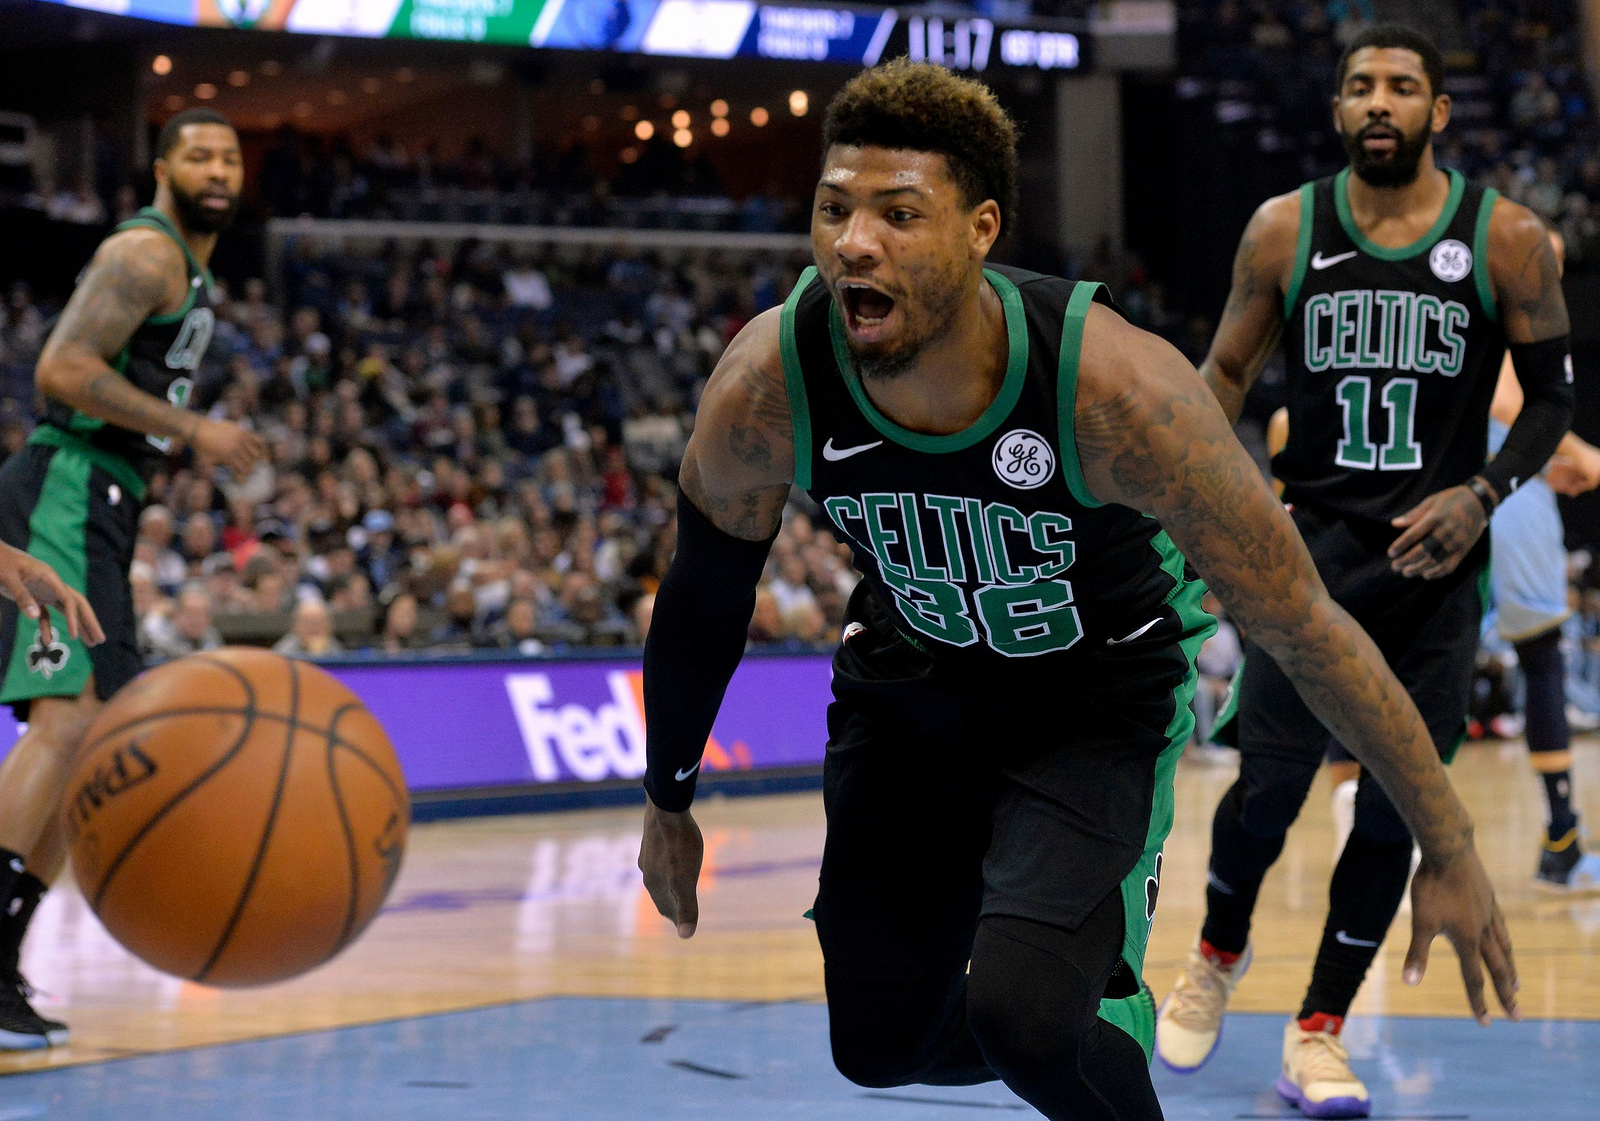 Celtics Mount Huge Comeback Behind Irving’s 26, Top Grizzlies 112-103